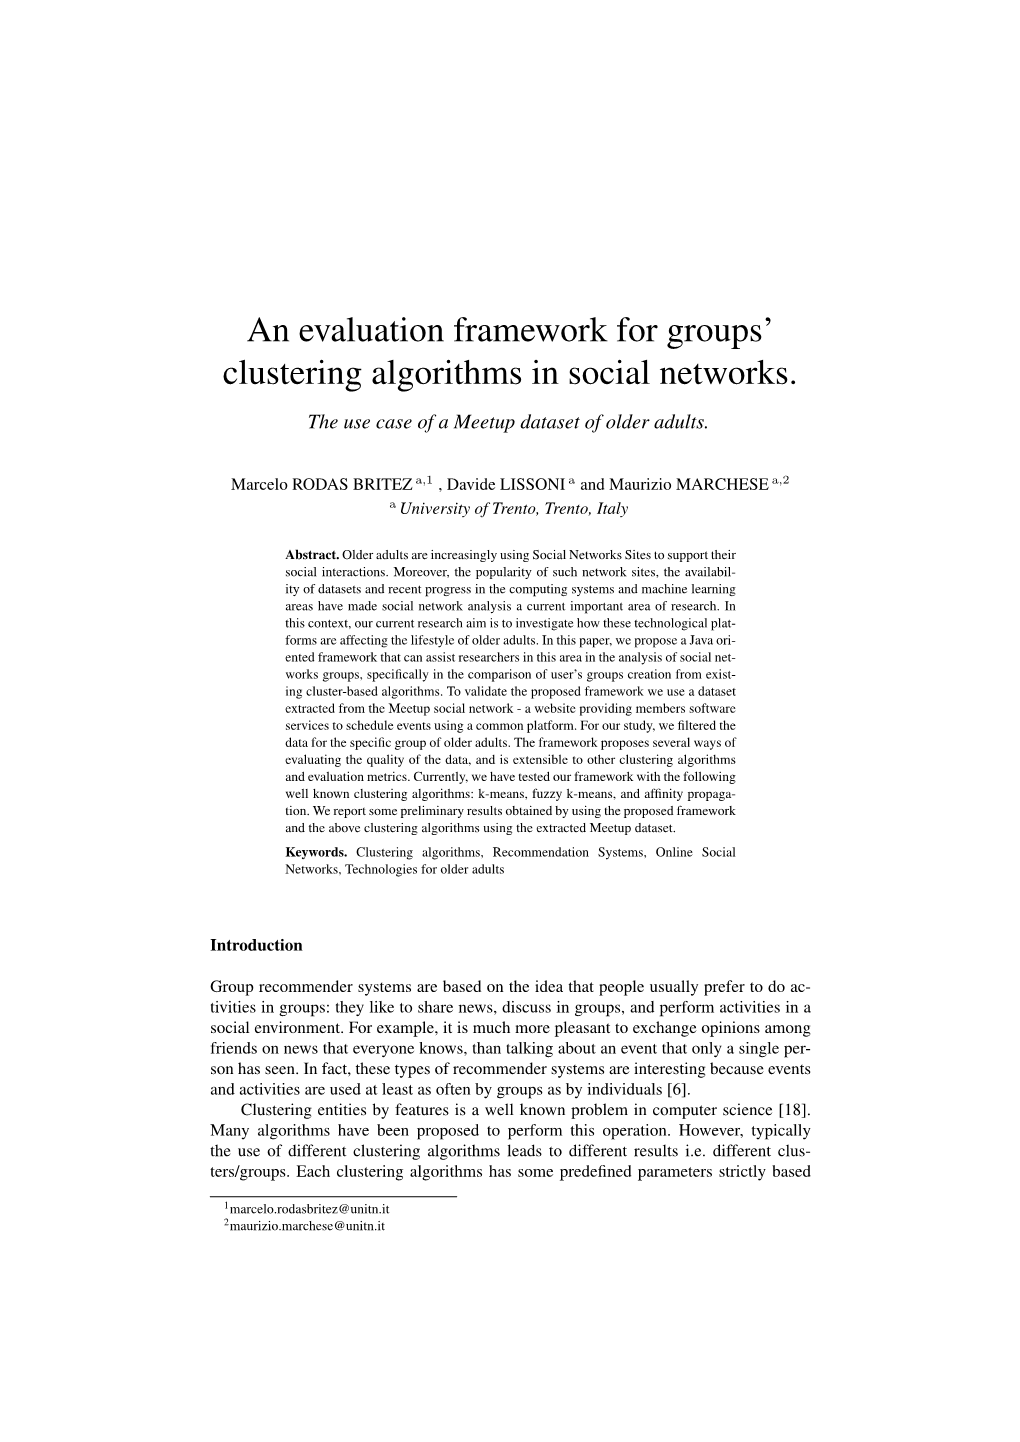 An Evaluation Framework for Groups' Clustering Algorithms in Social